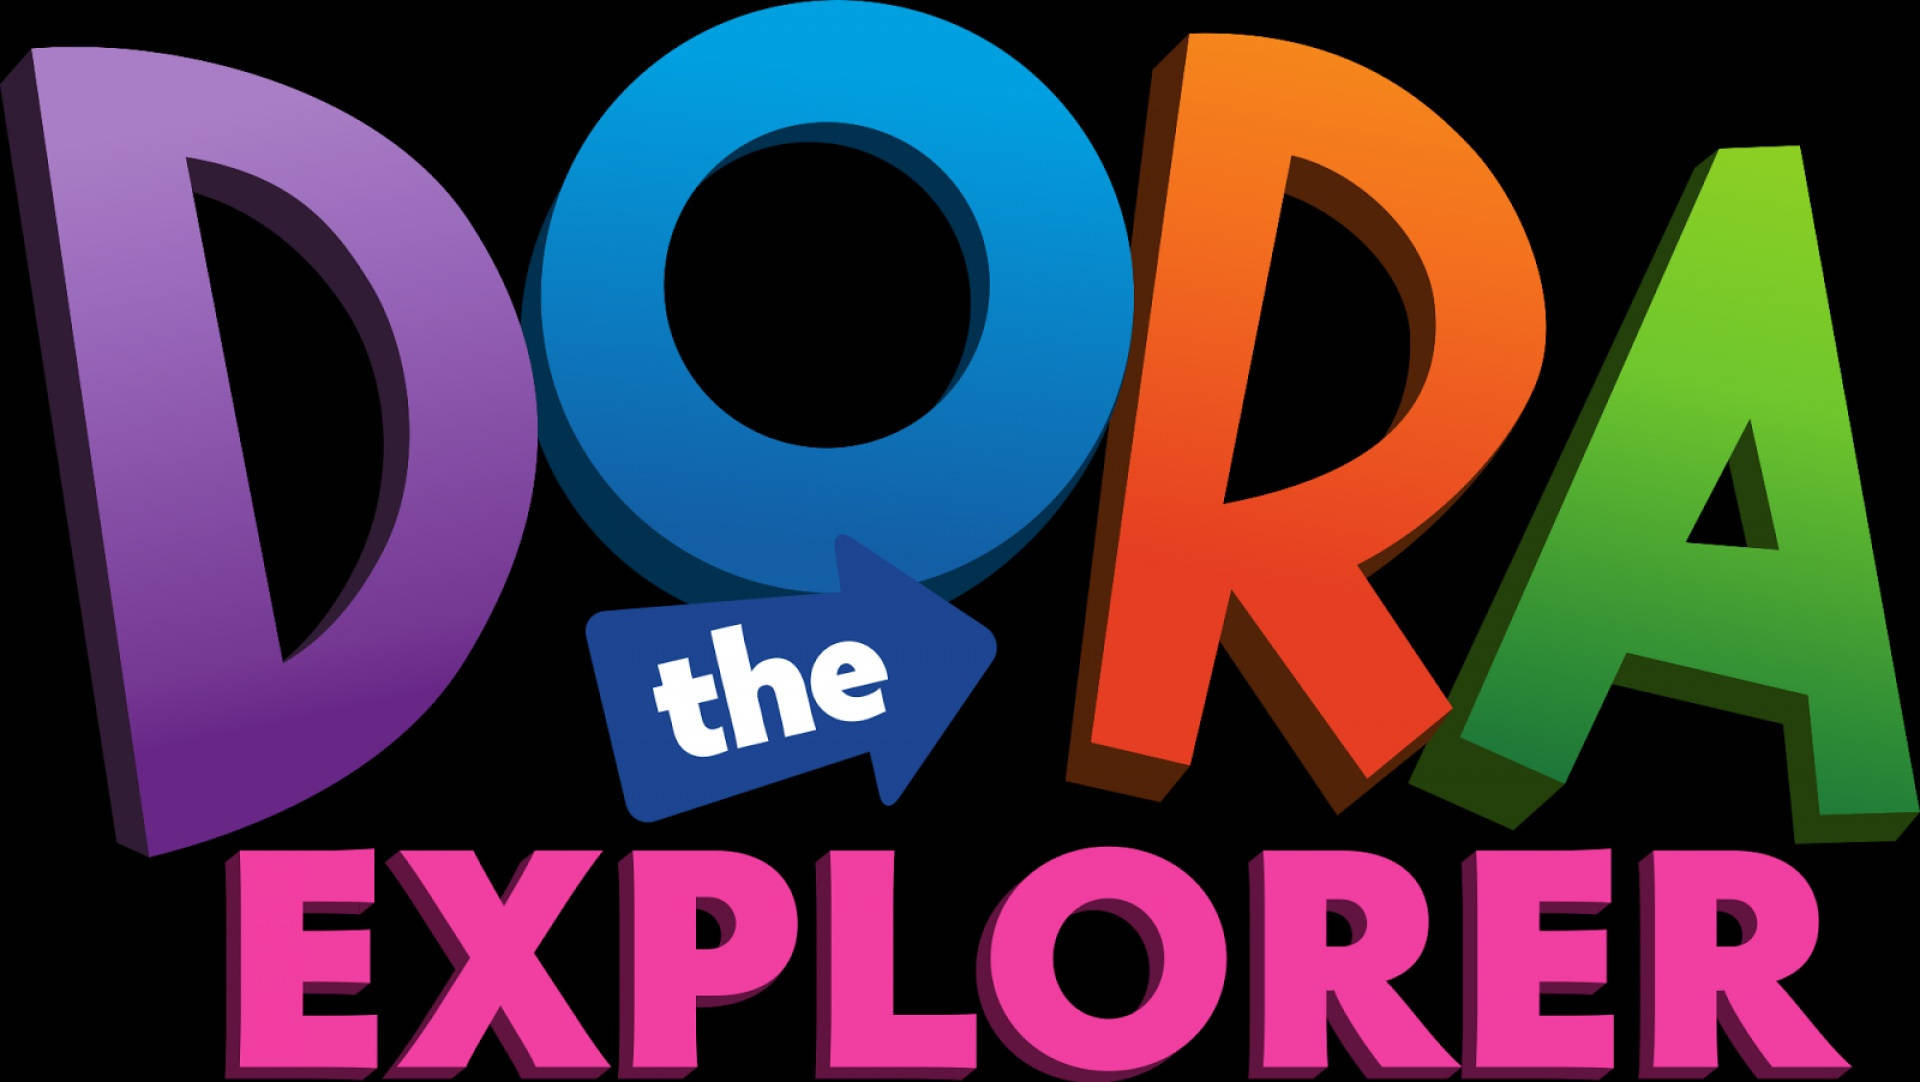 Dora The Explorer Logo Background